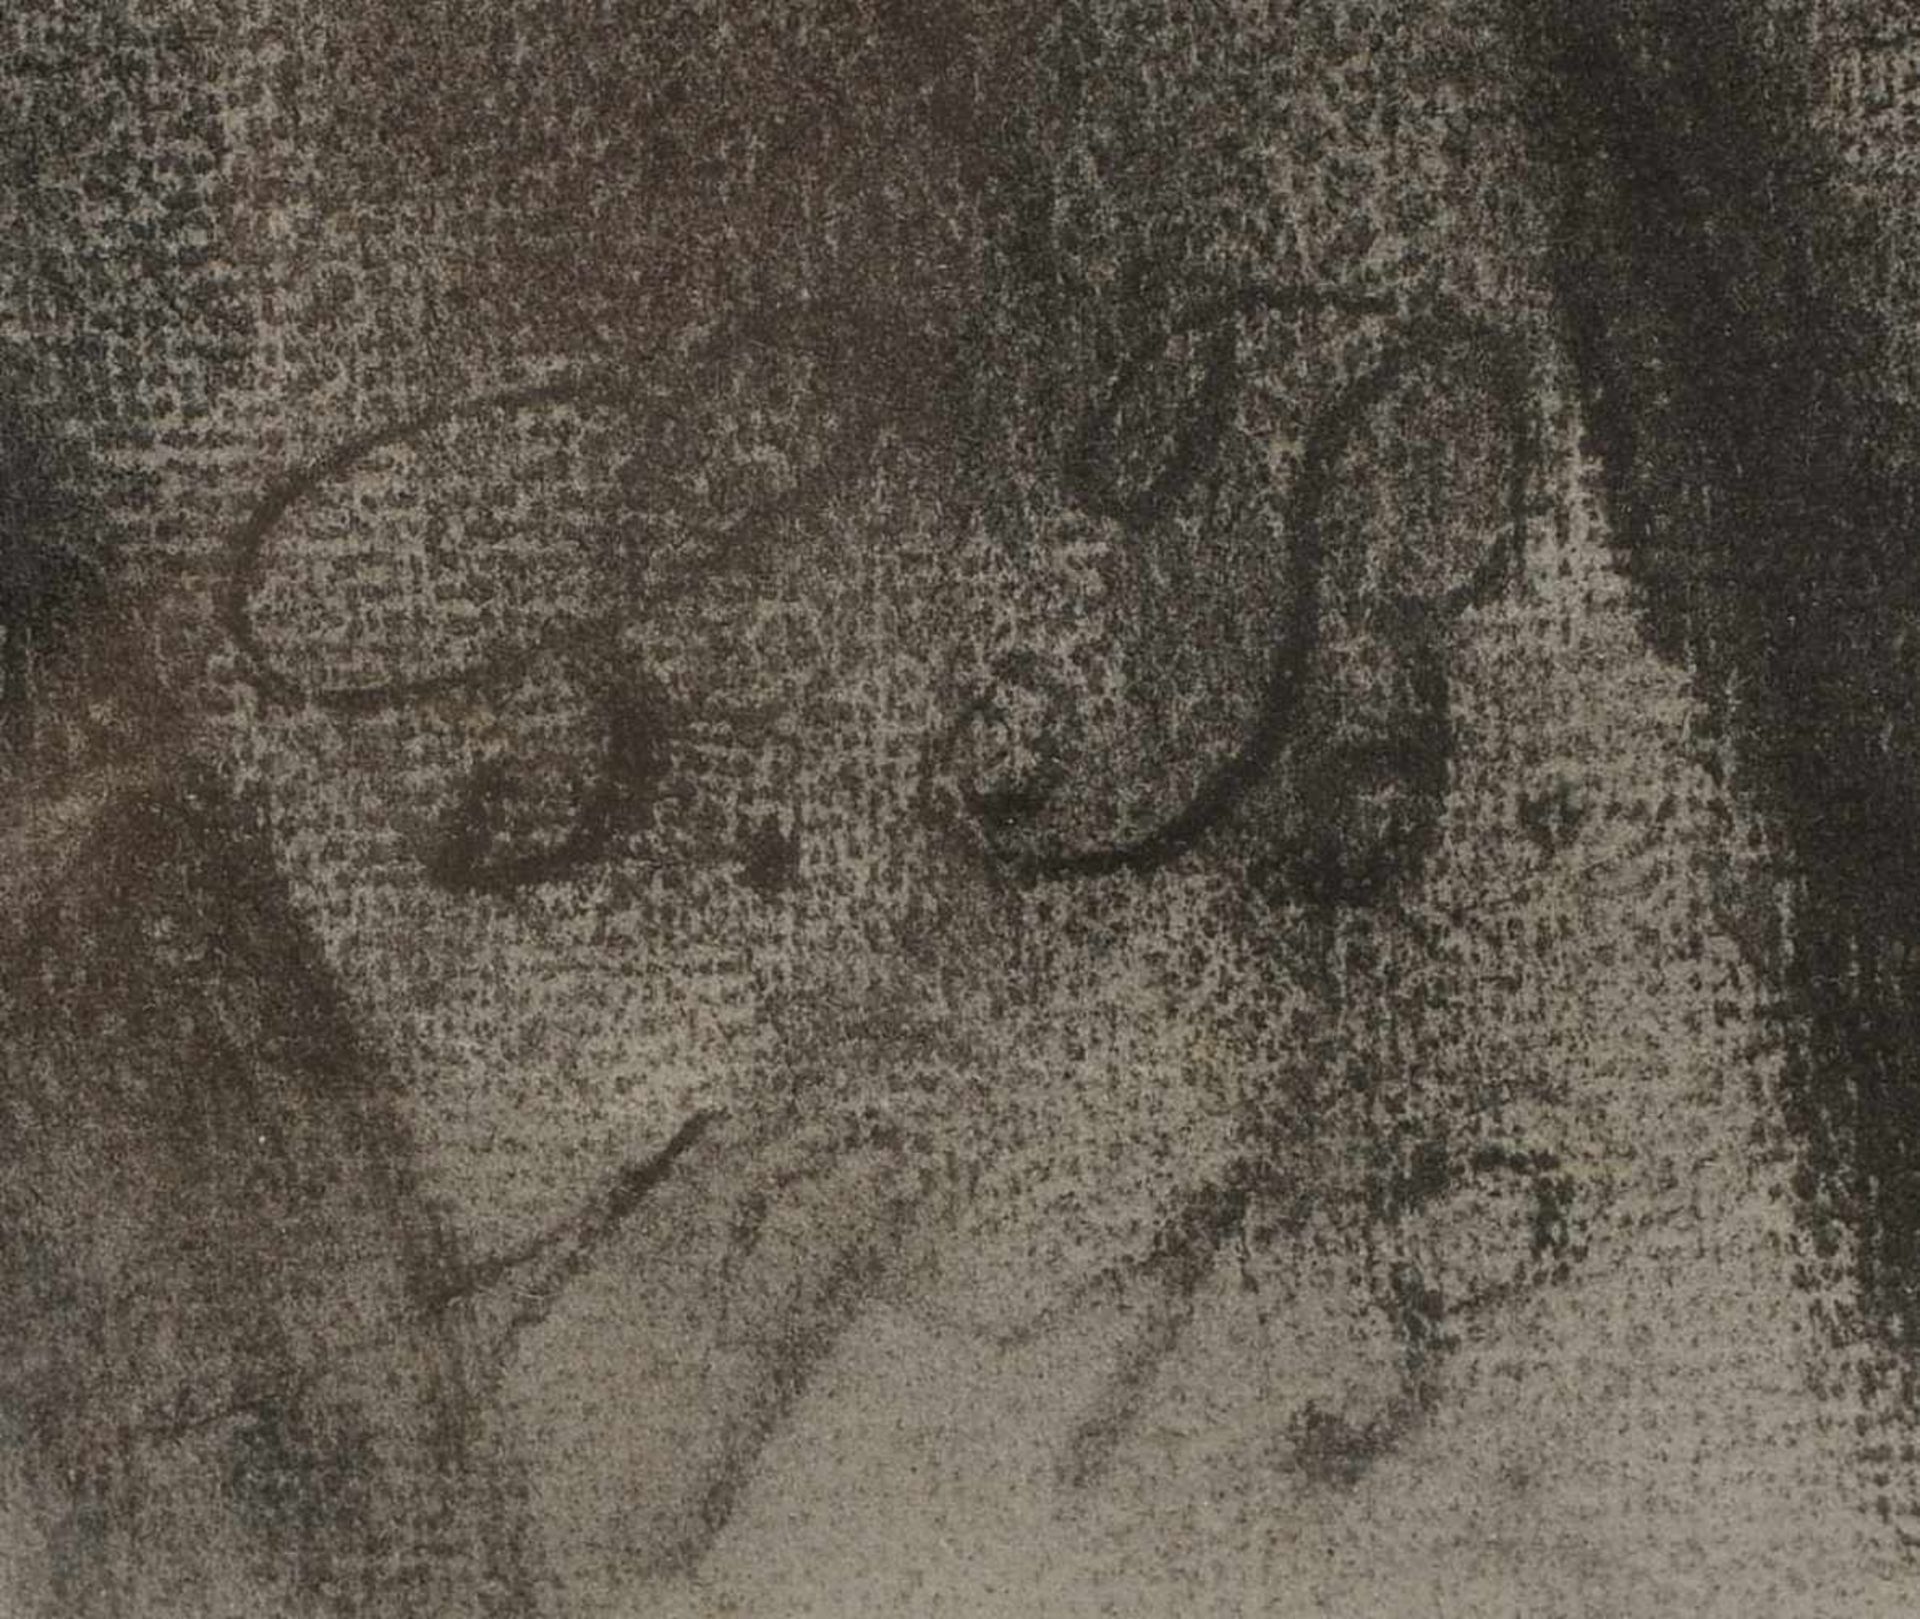 Monogrammistin S.B., 'Frauenportrait', Kohlezeichnung, im Blatt monogrammiert 'SB' und datiert ' - Bild 2 aus 2